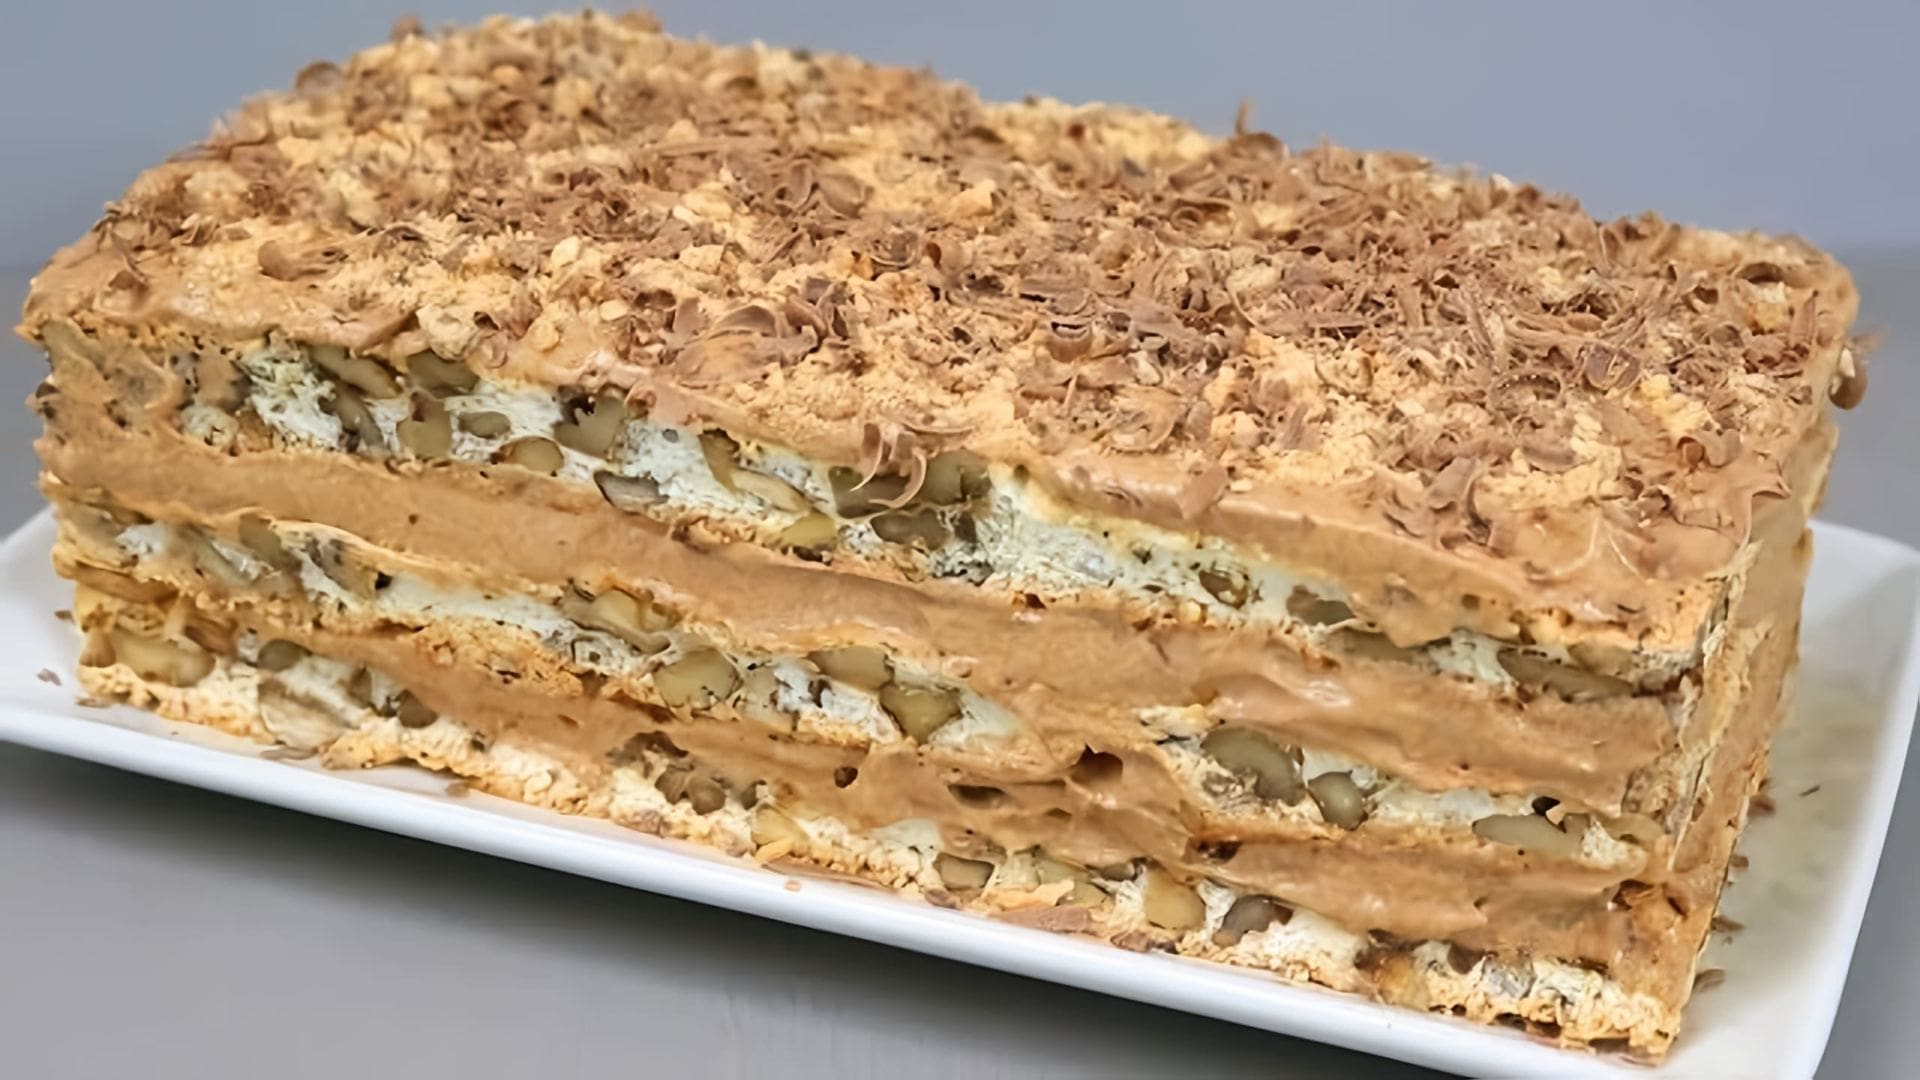 В этом видео демонстрируется рецепт приготовления торта "Королевский"